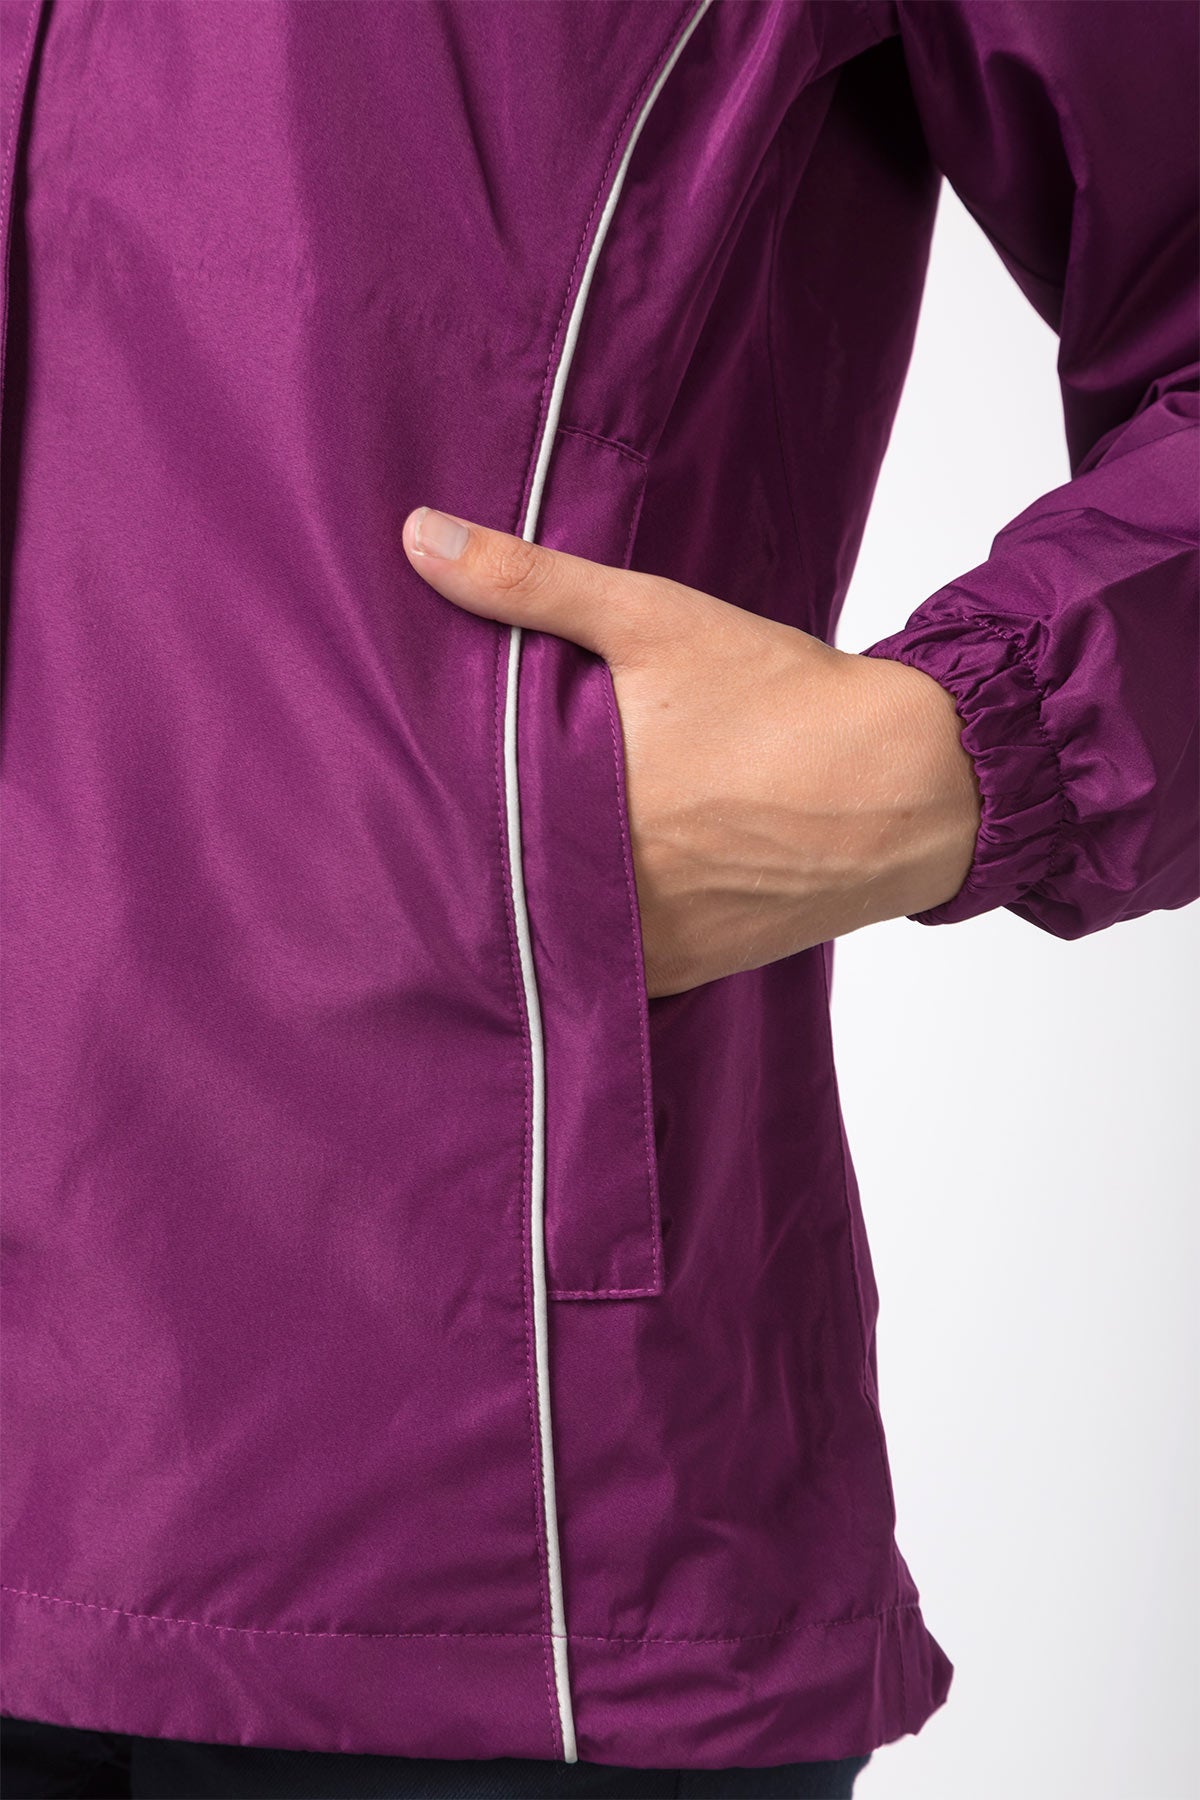 Ladies Jacket in a Packet UK | Waterproof Coat in a Bag | Rydale